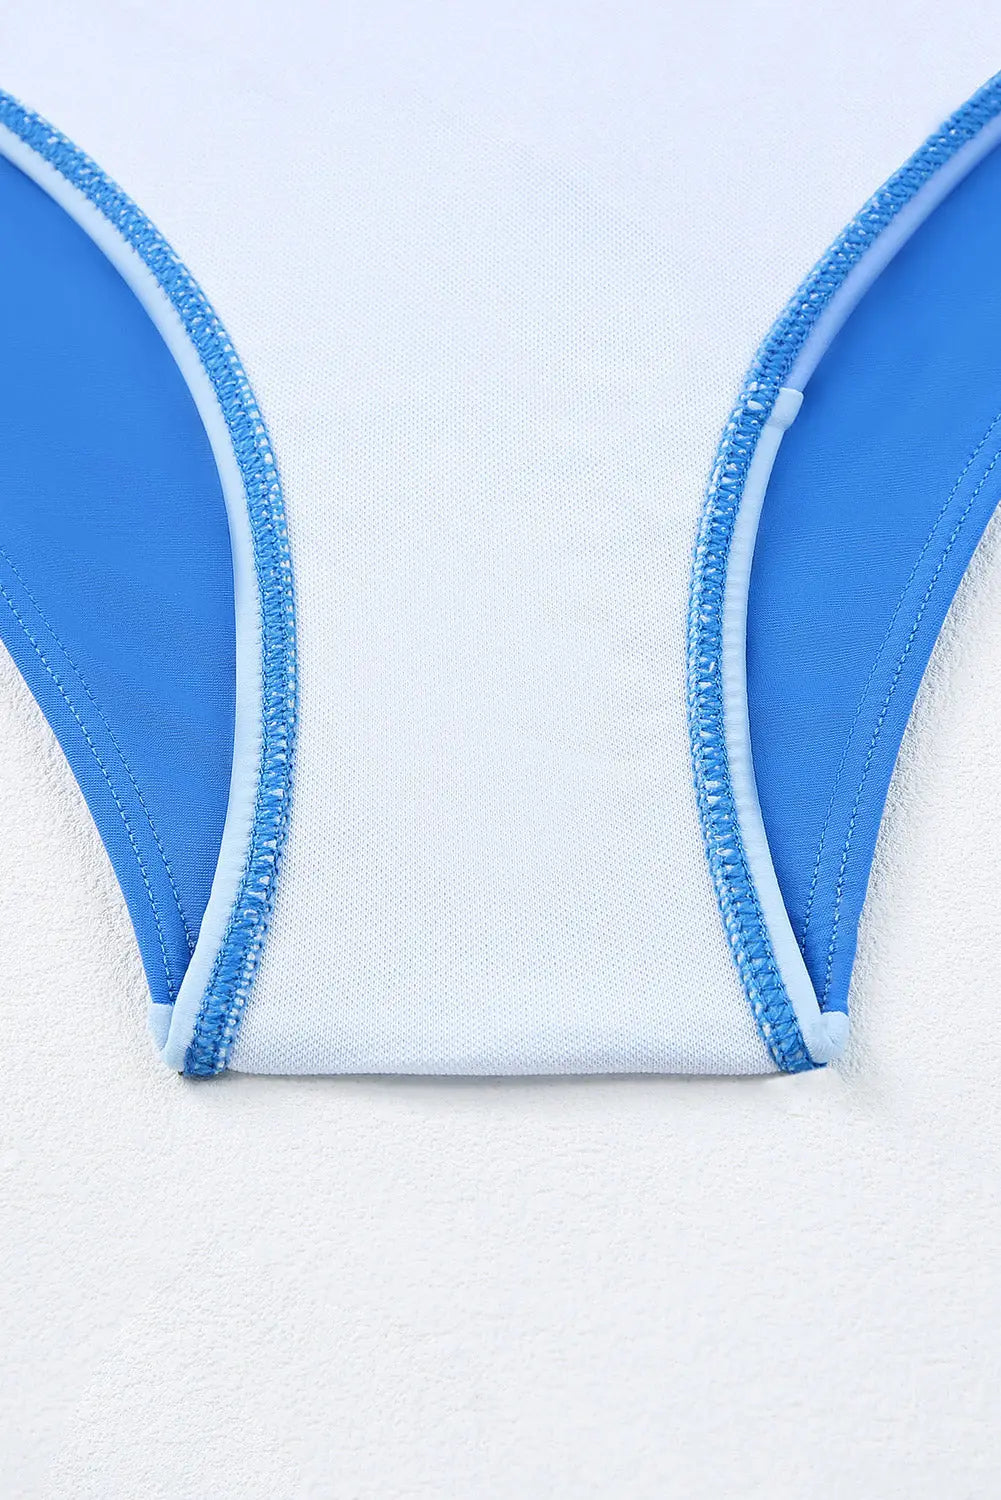 Blue Zone Planet |  Sky Blue Ombre Color Block Tie Shoulder Bikini High Waist Swimsuit Blue Zone Planet